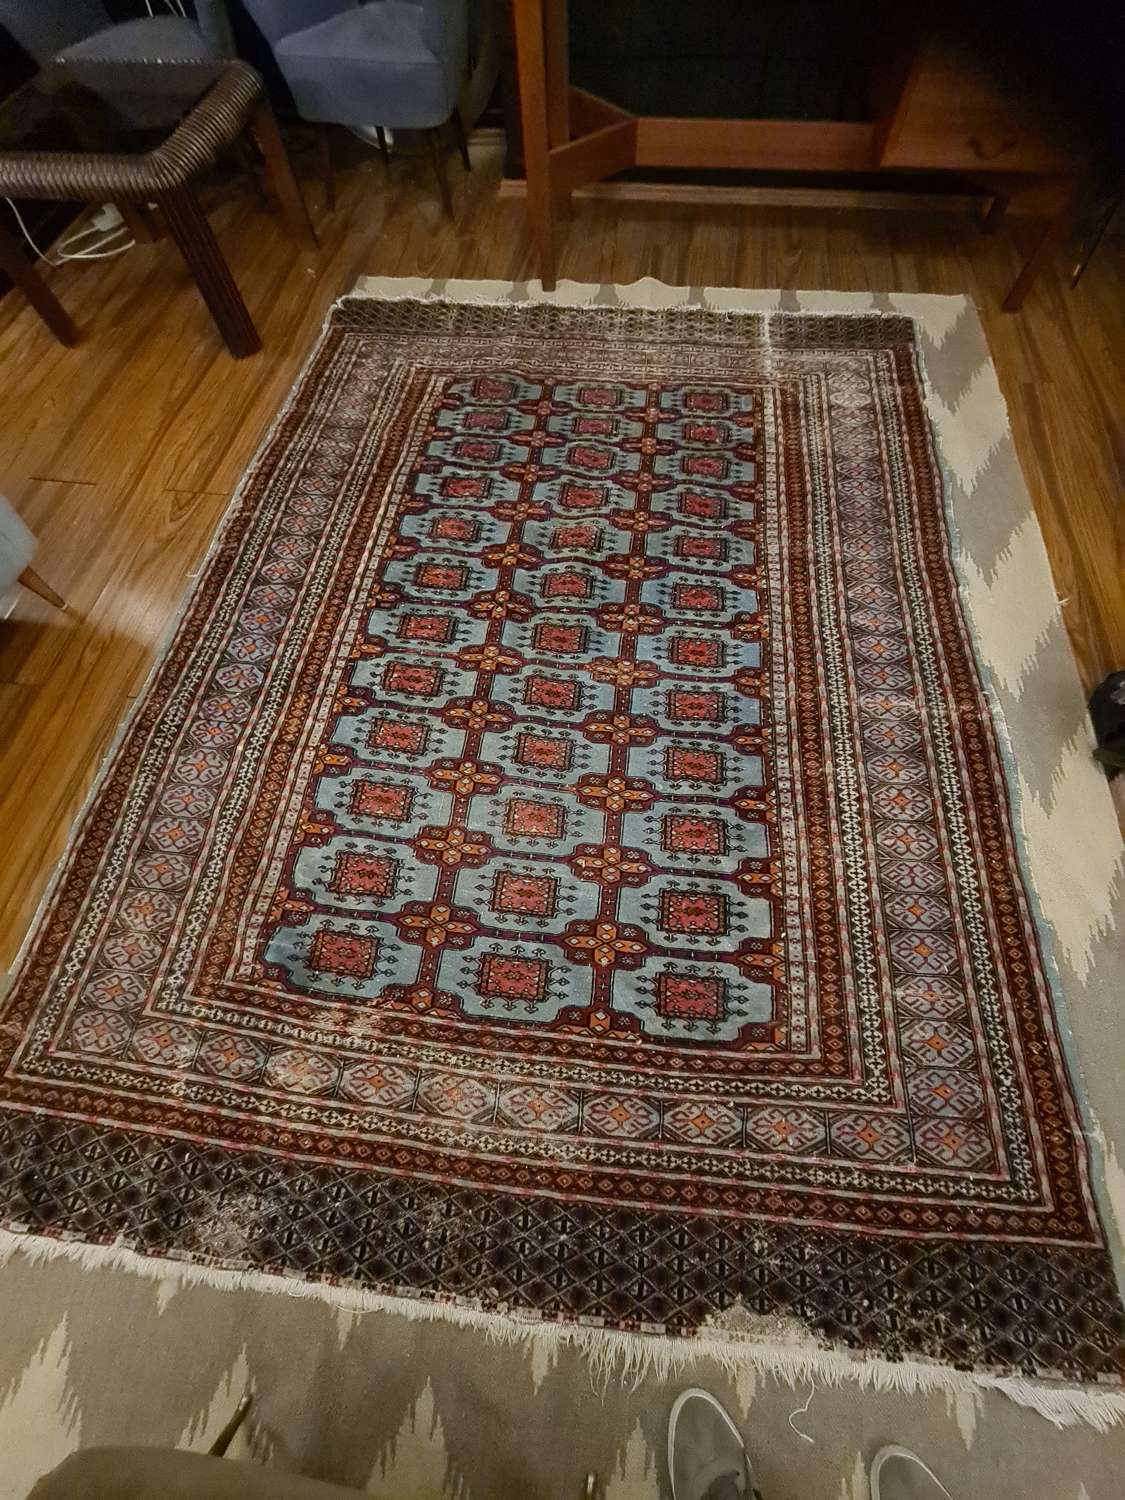 Bookhara rug